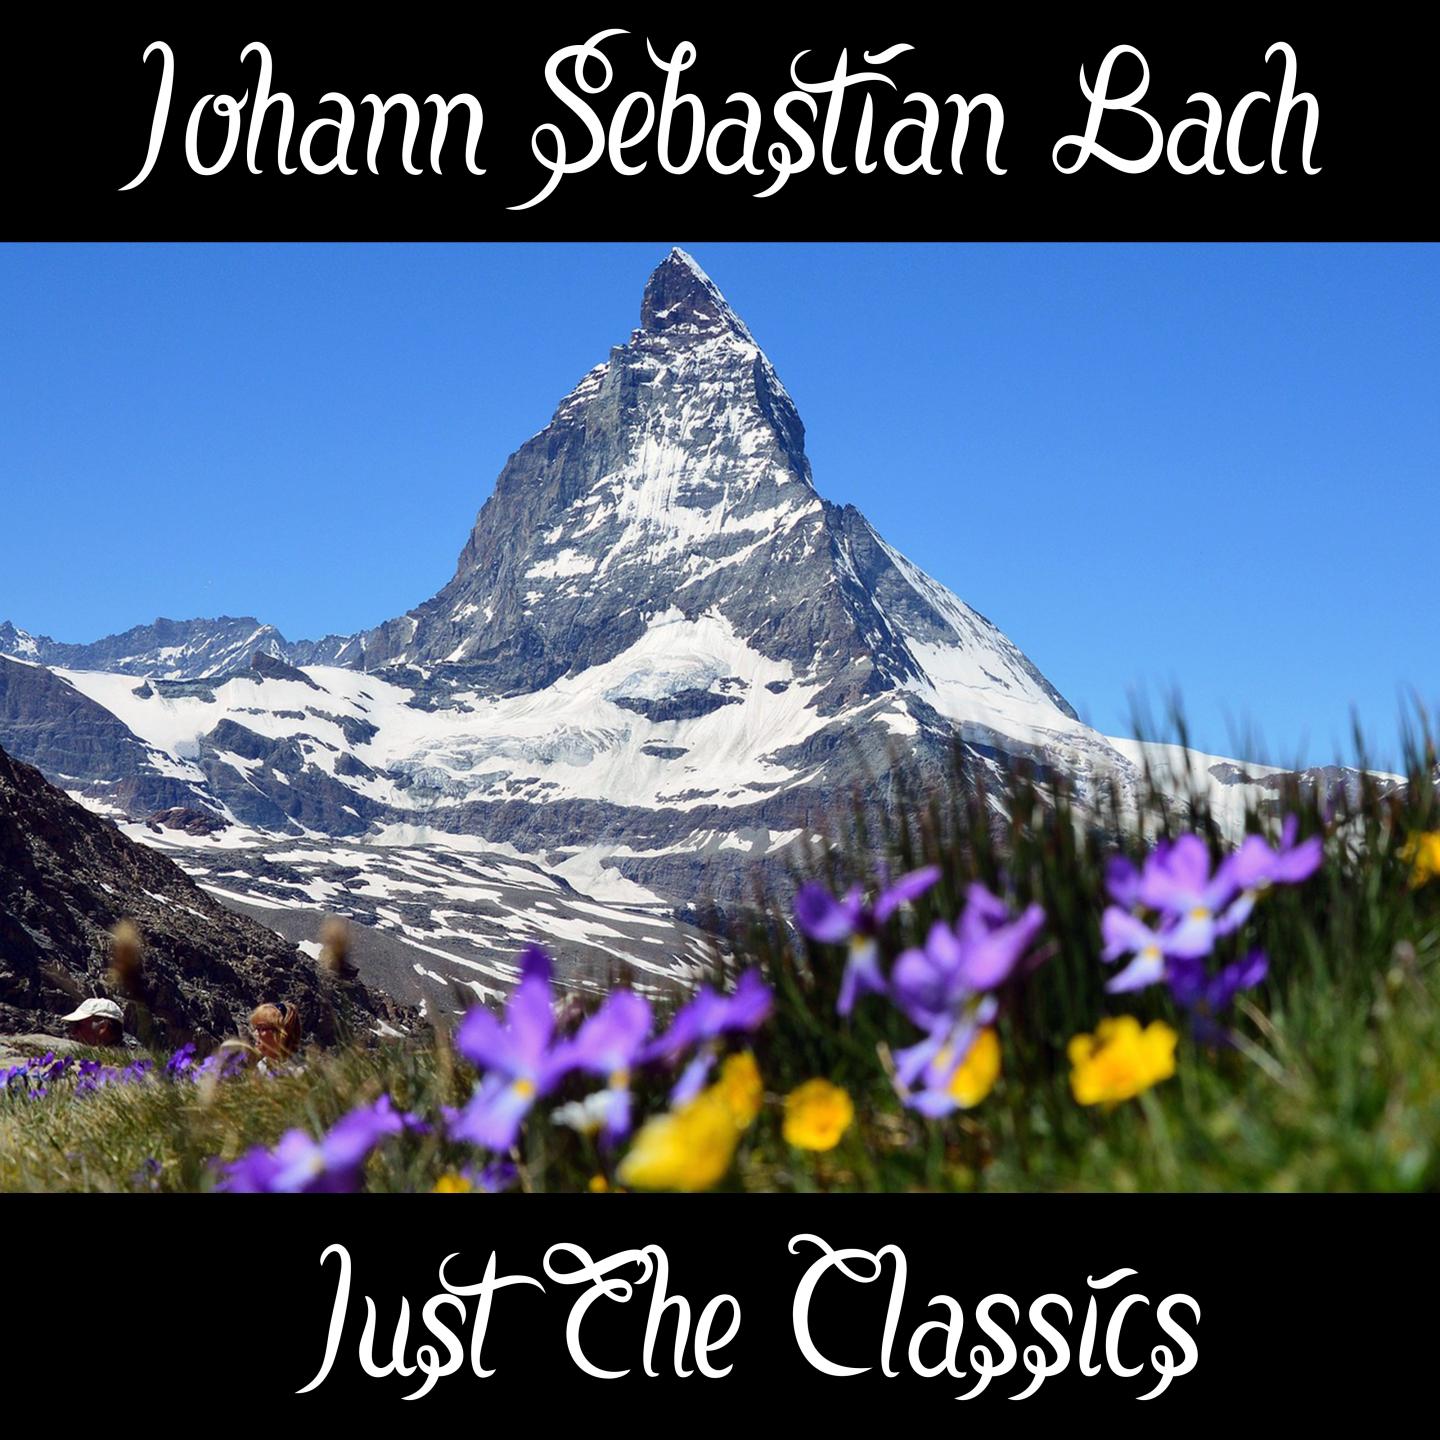 Johann Sebastian Bach: Just The Classics